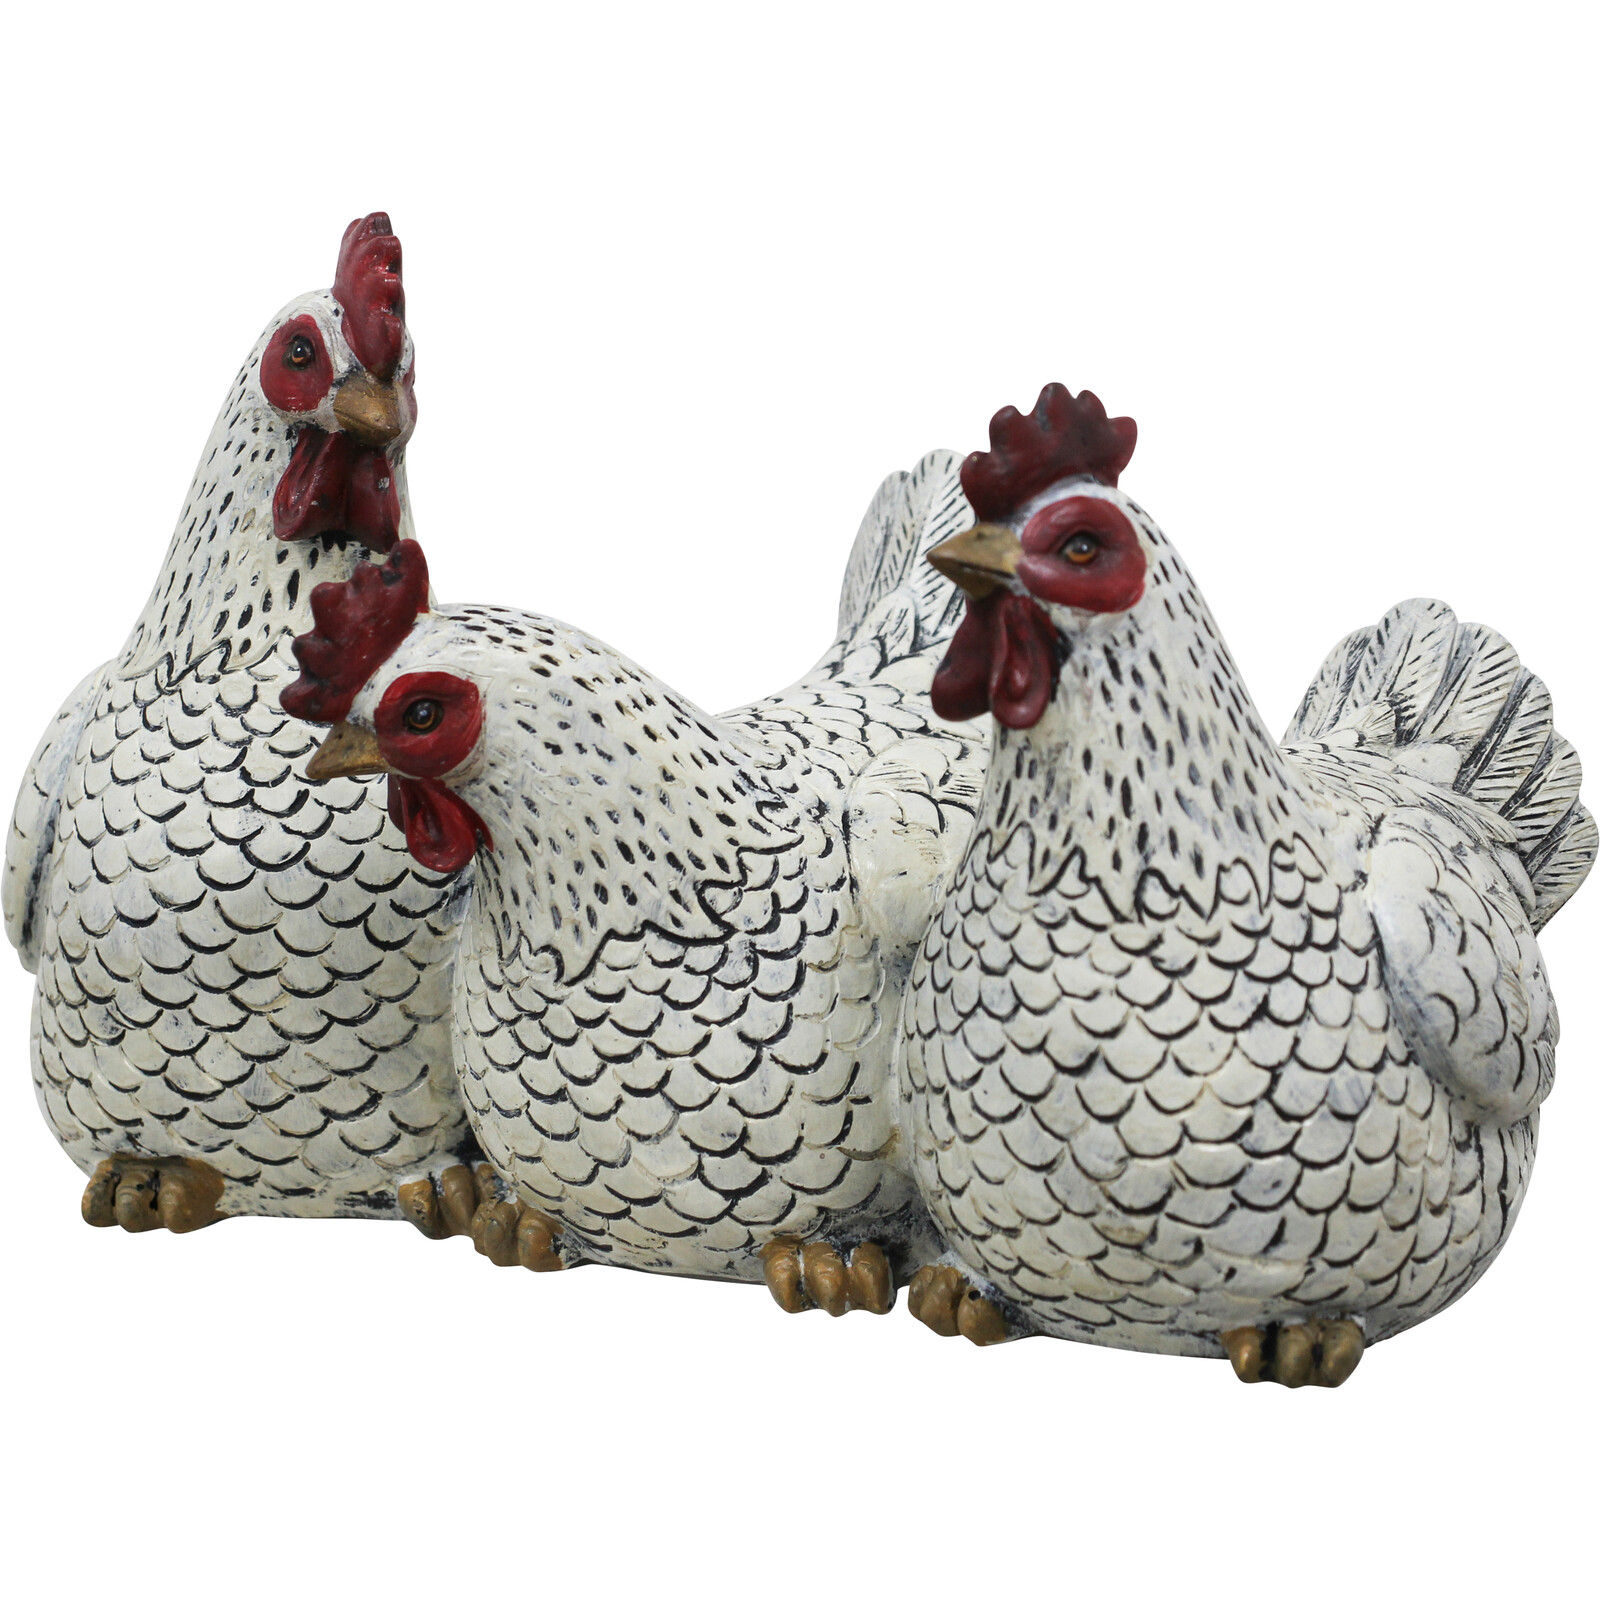 Three Chicken Friends - White Body